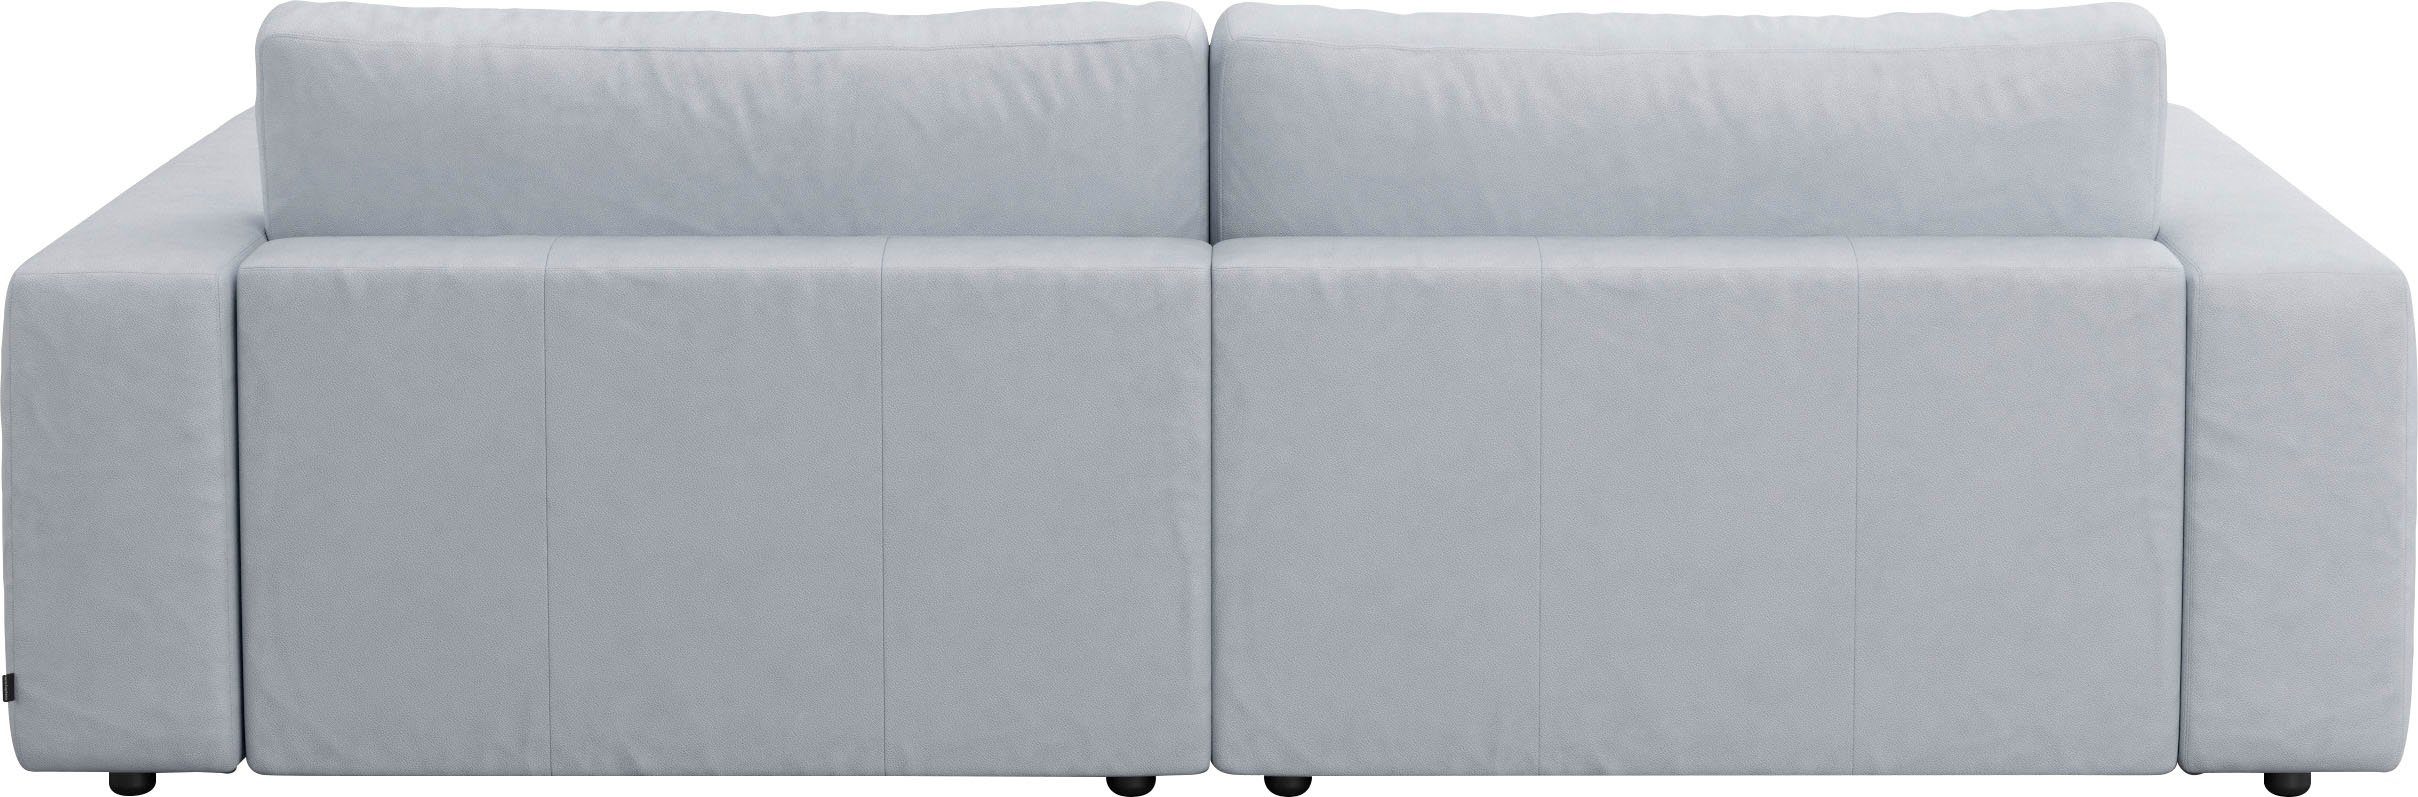 GALLERY M branded vielen Big-Sofa und Musterring 4 Nähten, unterschiedlichen 2,5-Sitzer Qualitäten by LUCIA, in